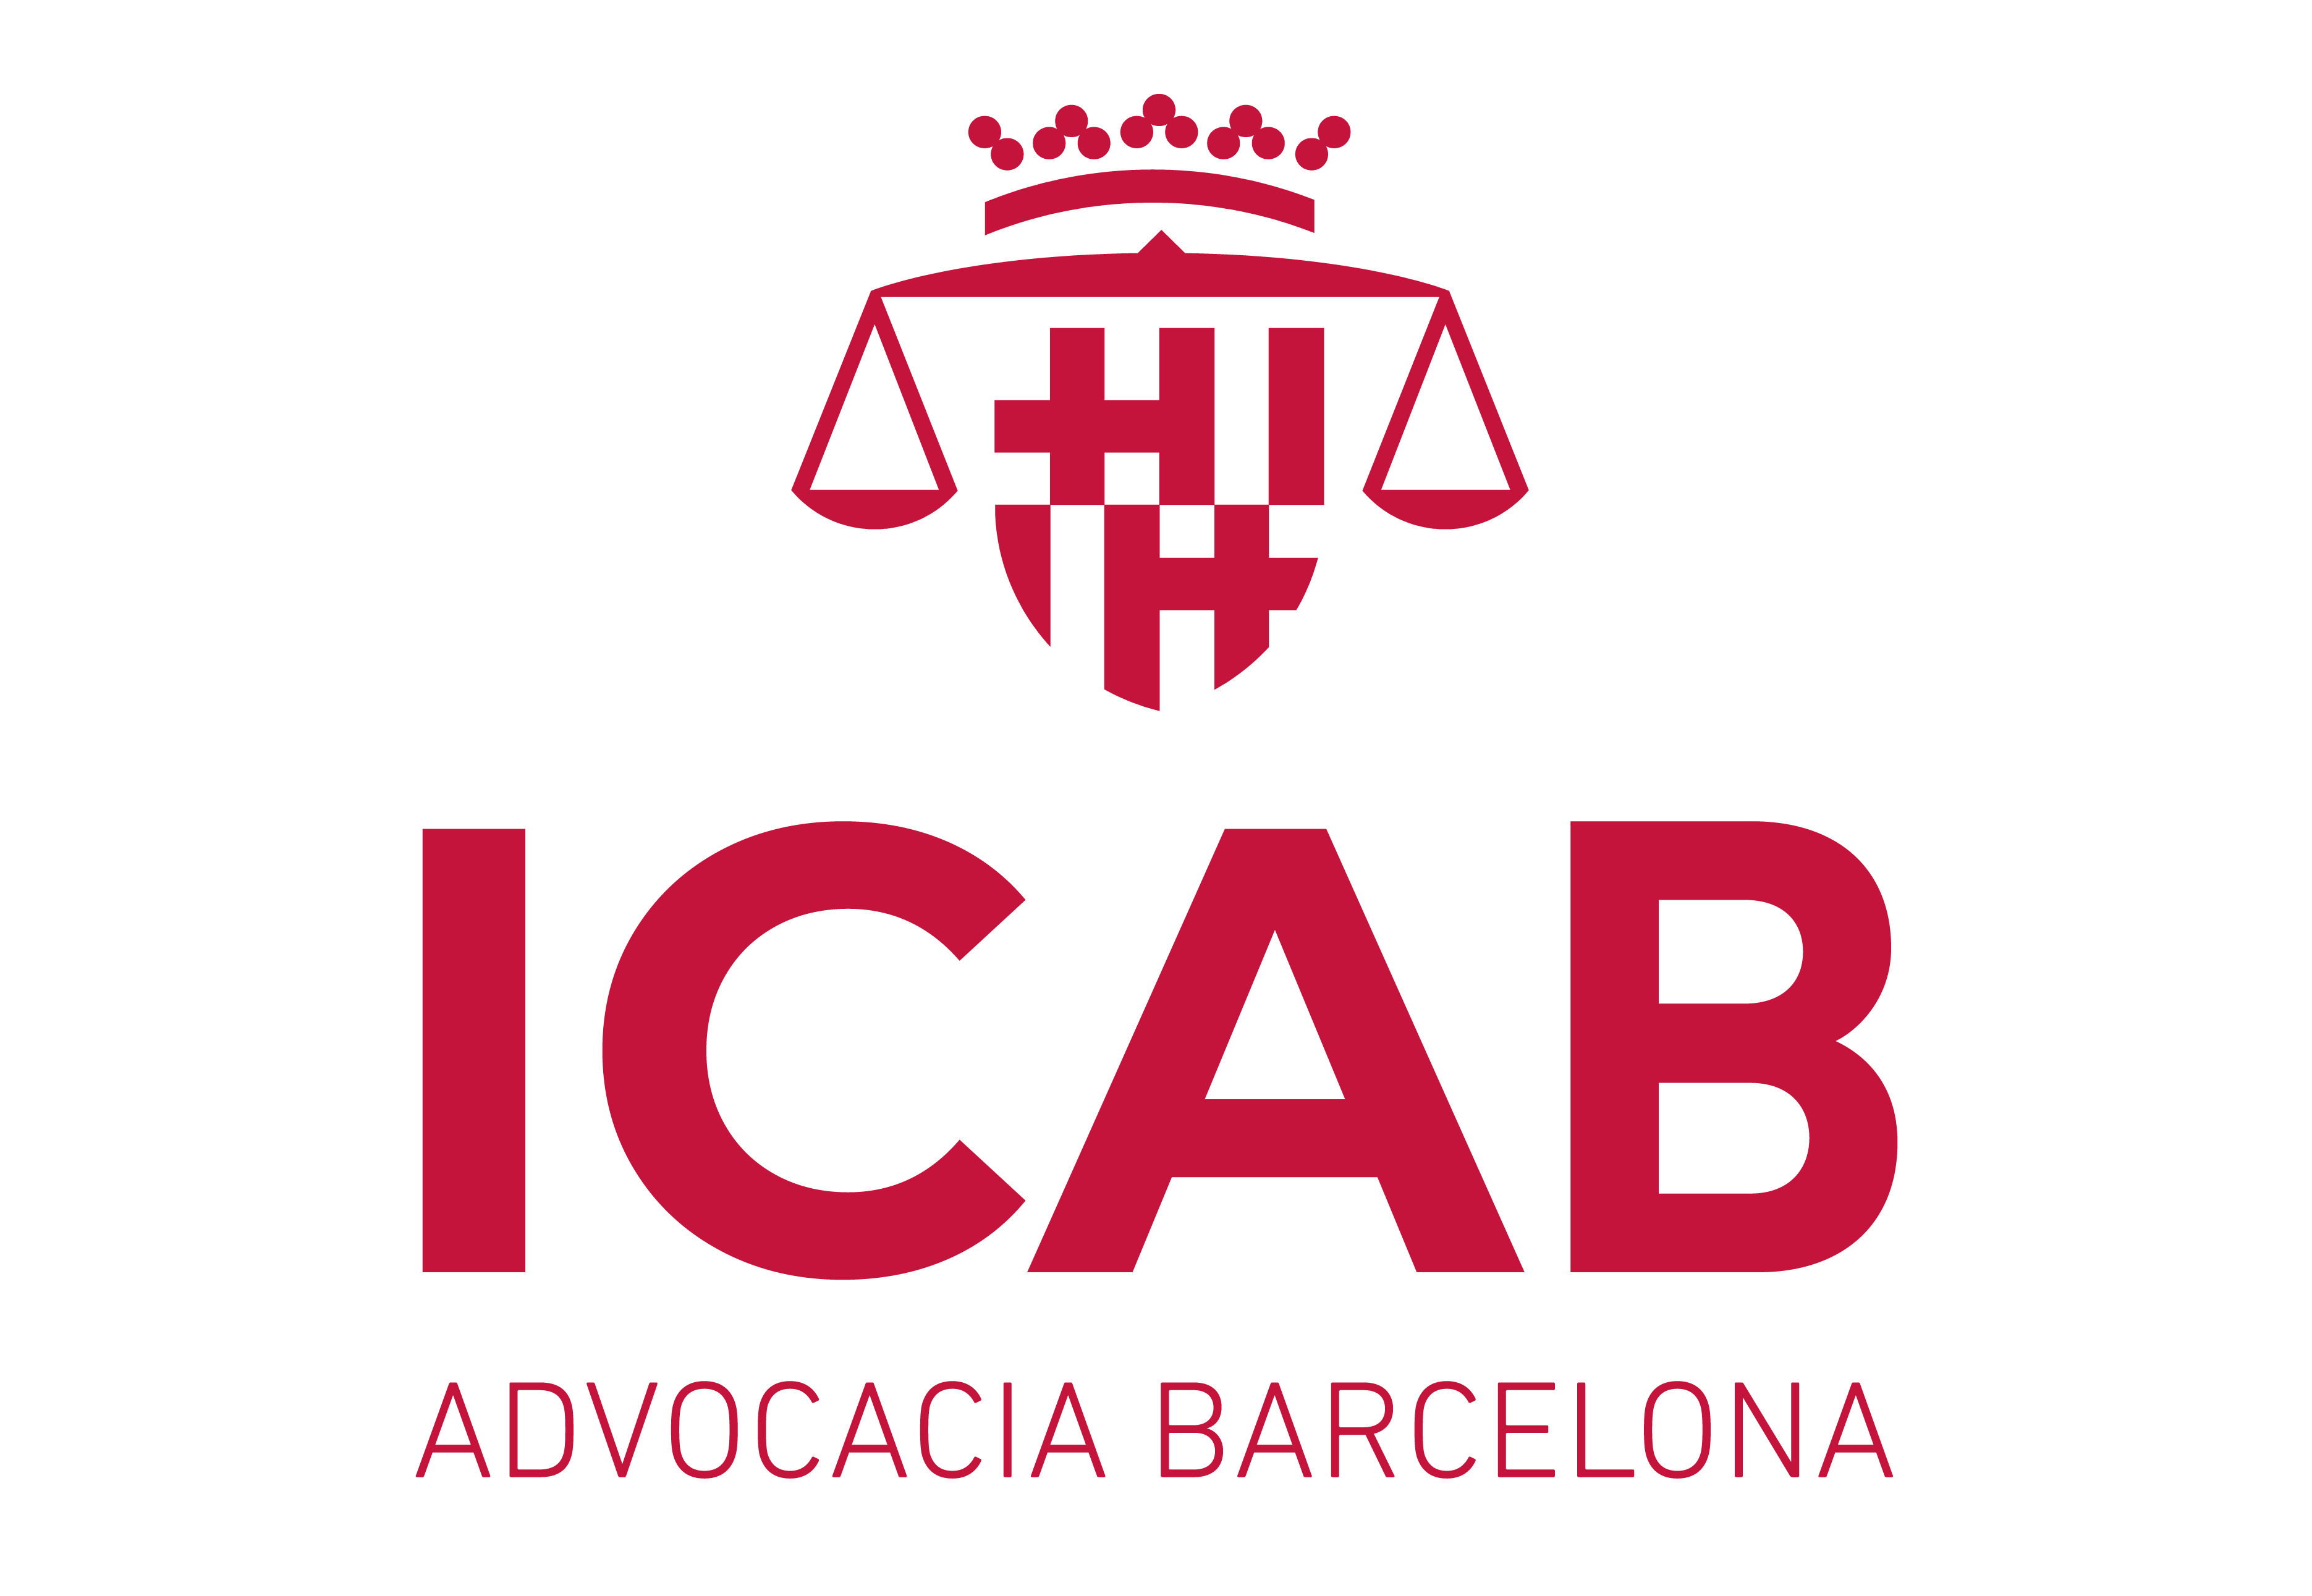 Ilustre Colegio de la Abogacía de Barcelona (ICAB) / Barcelona Bar Association (ICAB)